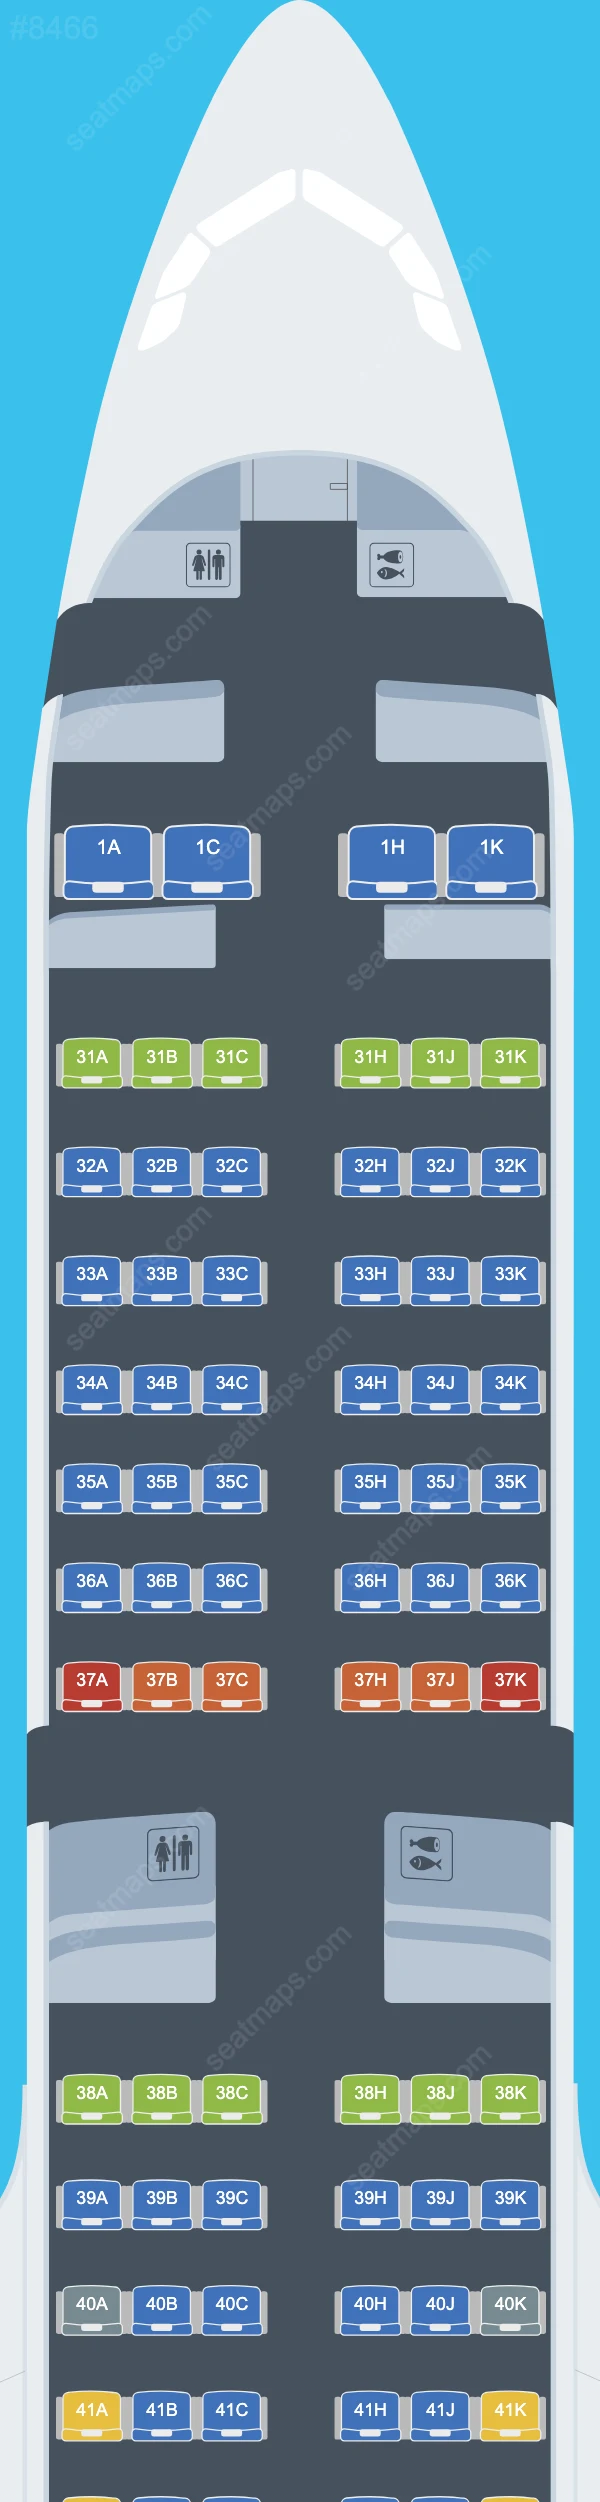 Схема салона China Southern в самолете Airbus A321 A321-200neo V.2